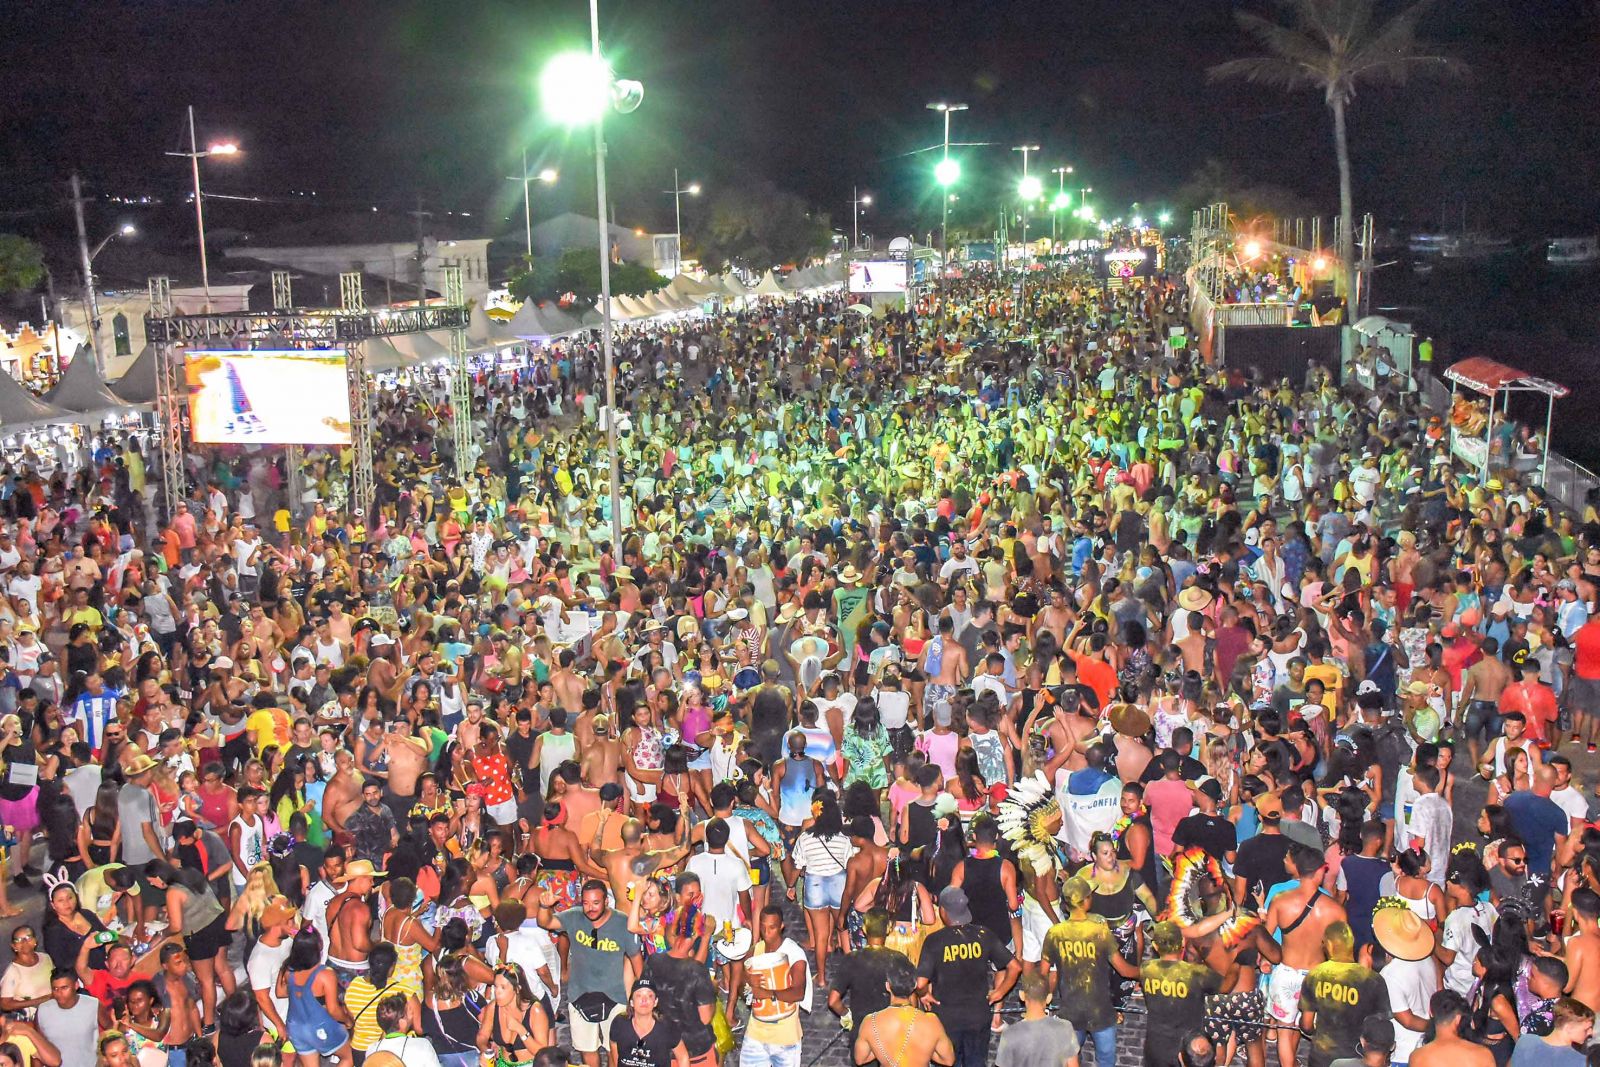 Folia emana alegria no encerramento do Carnaval Porto Seguro 2020. (Foto: Divulgao)